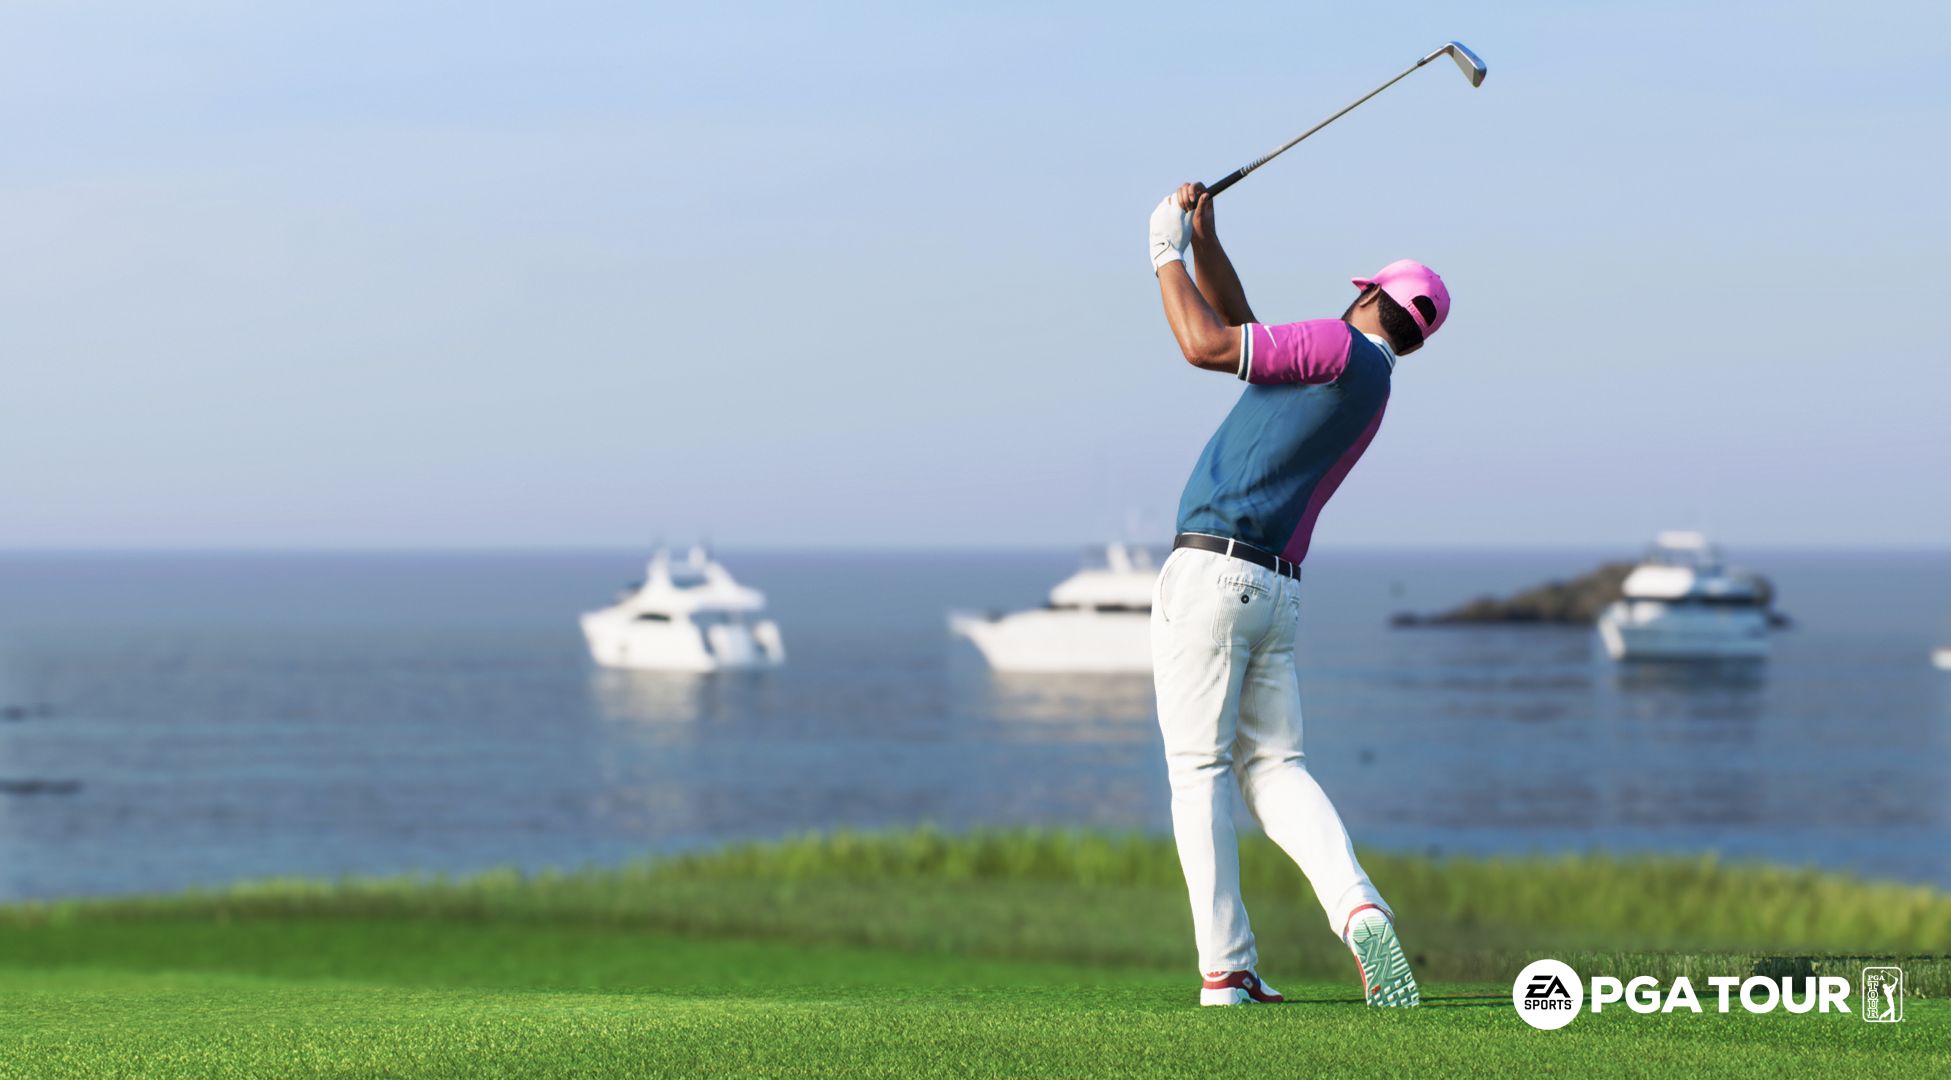 EA Sports PGA Tour משתמש במסוקי סריקת לייזר ועוד כדי לספק את משחק הגולף המציאותי ביותר עד כה